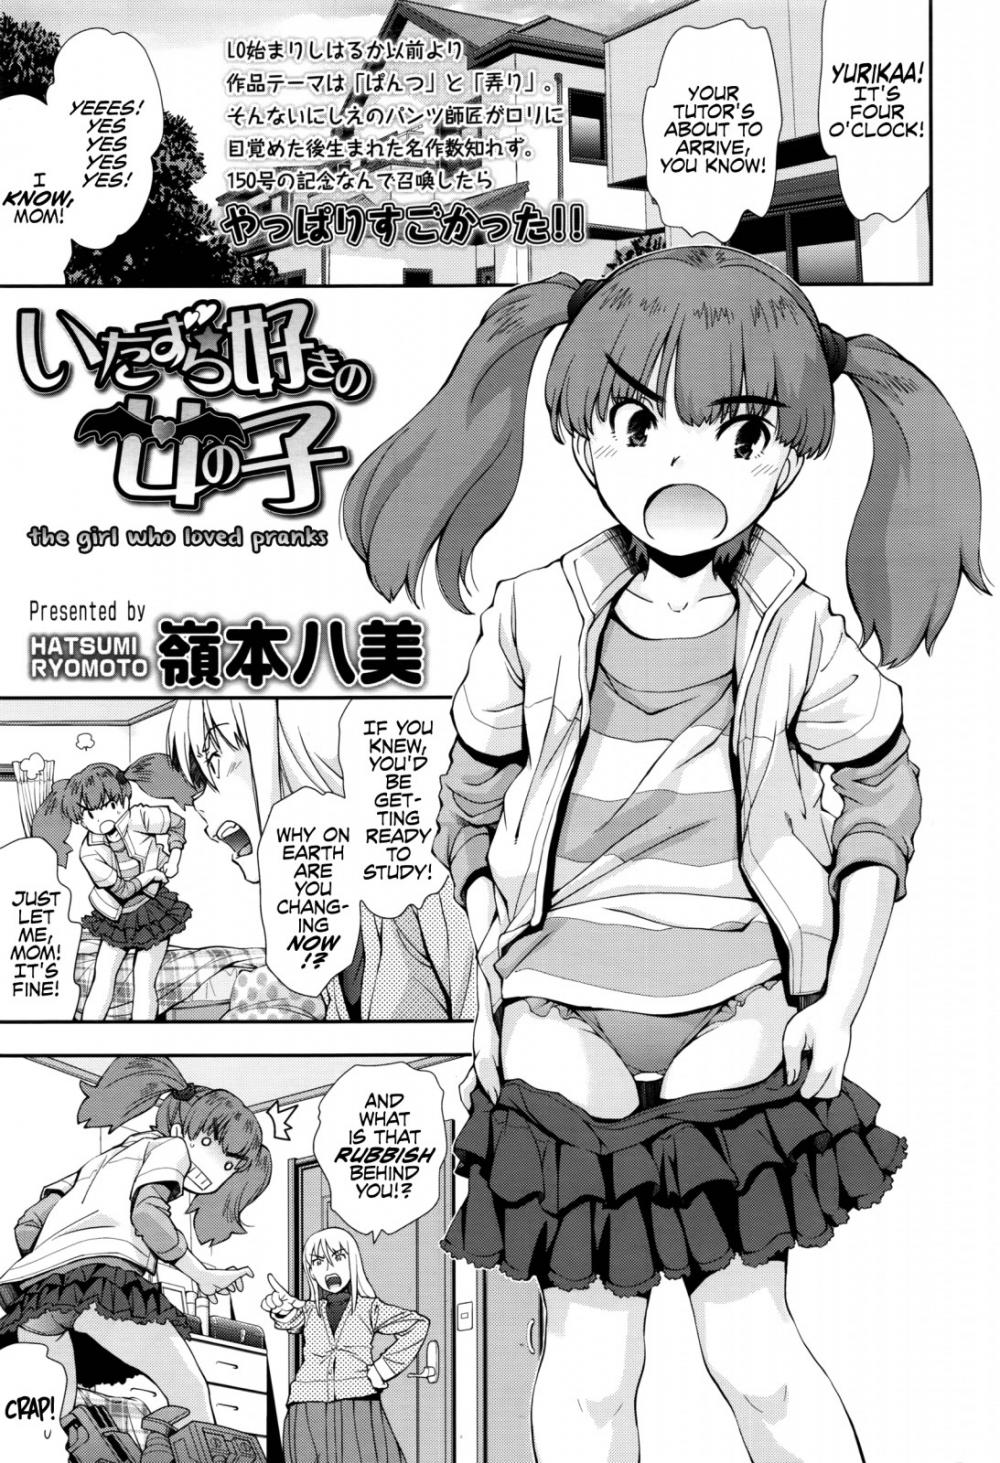 Hentai Manga Comic-The Girl Who Loved Pranks-Read-1